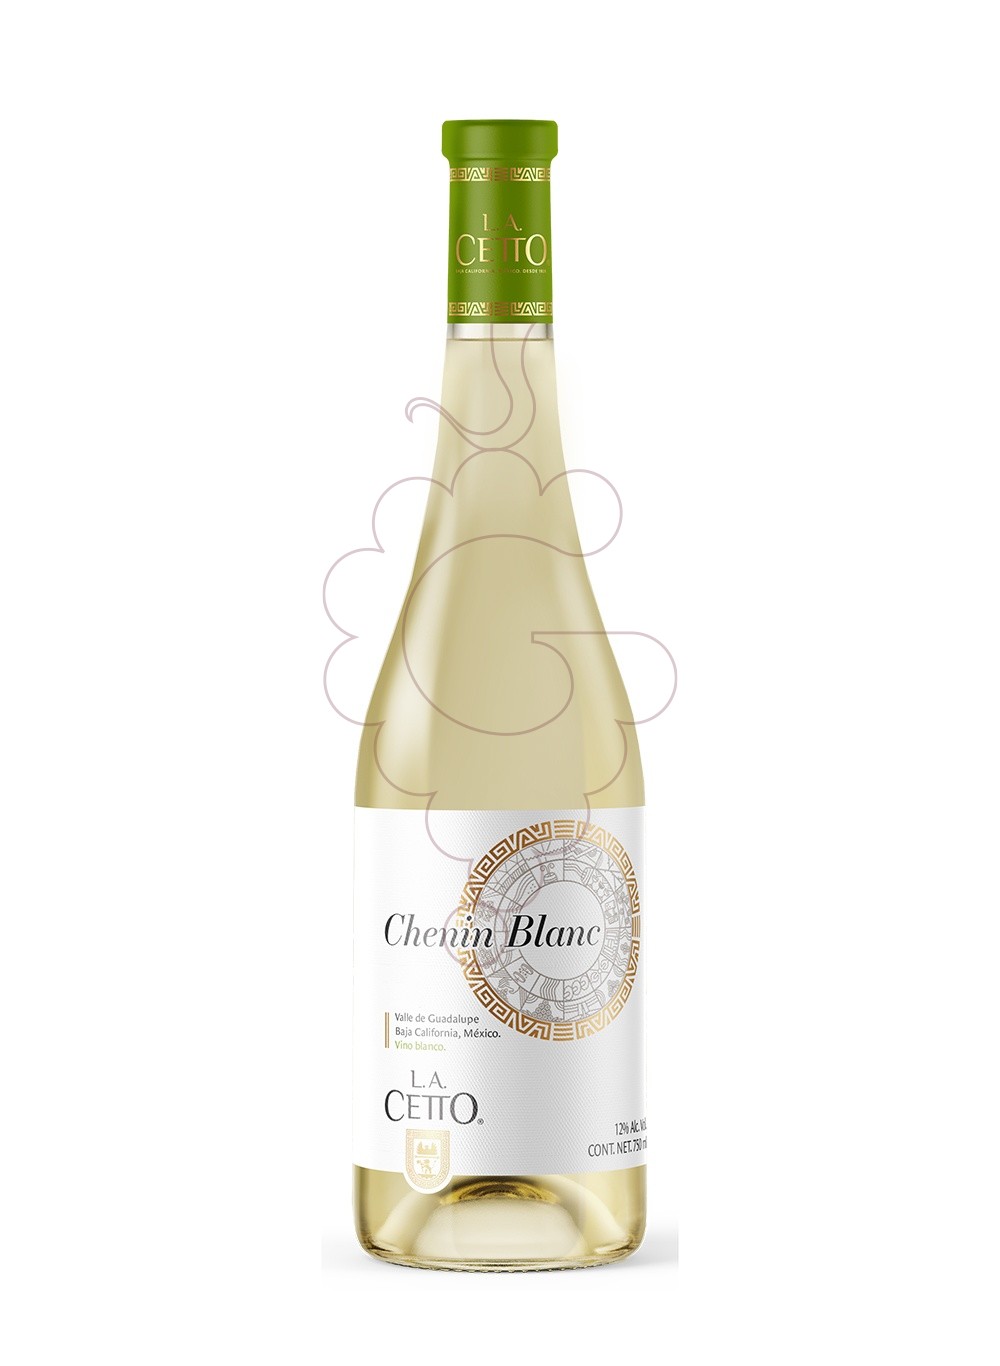 Photo LA Cetto Chenin Blanc vin blanc